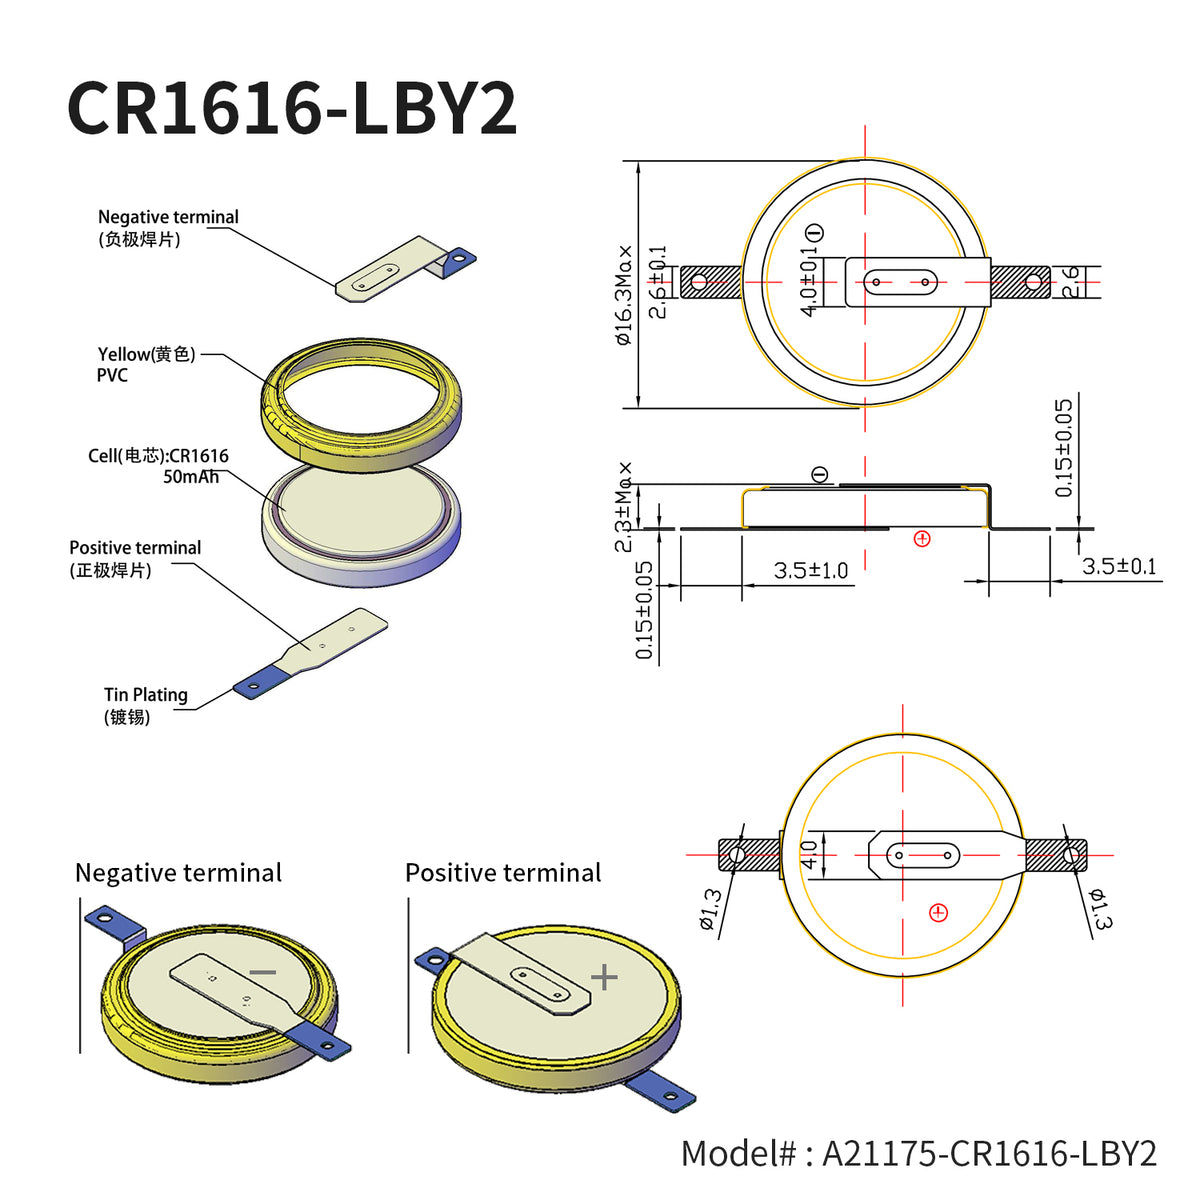 CR1616-LBY2